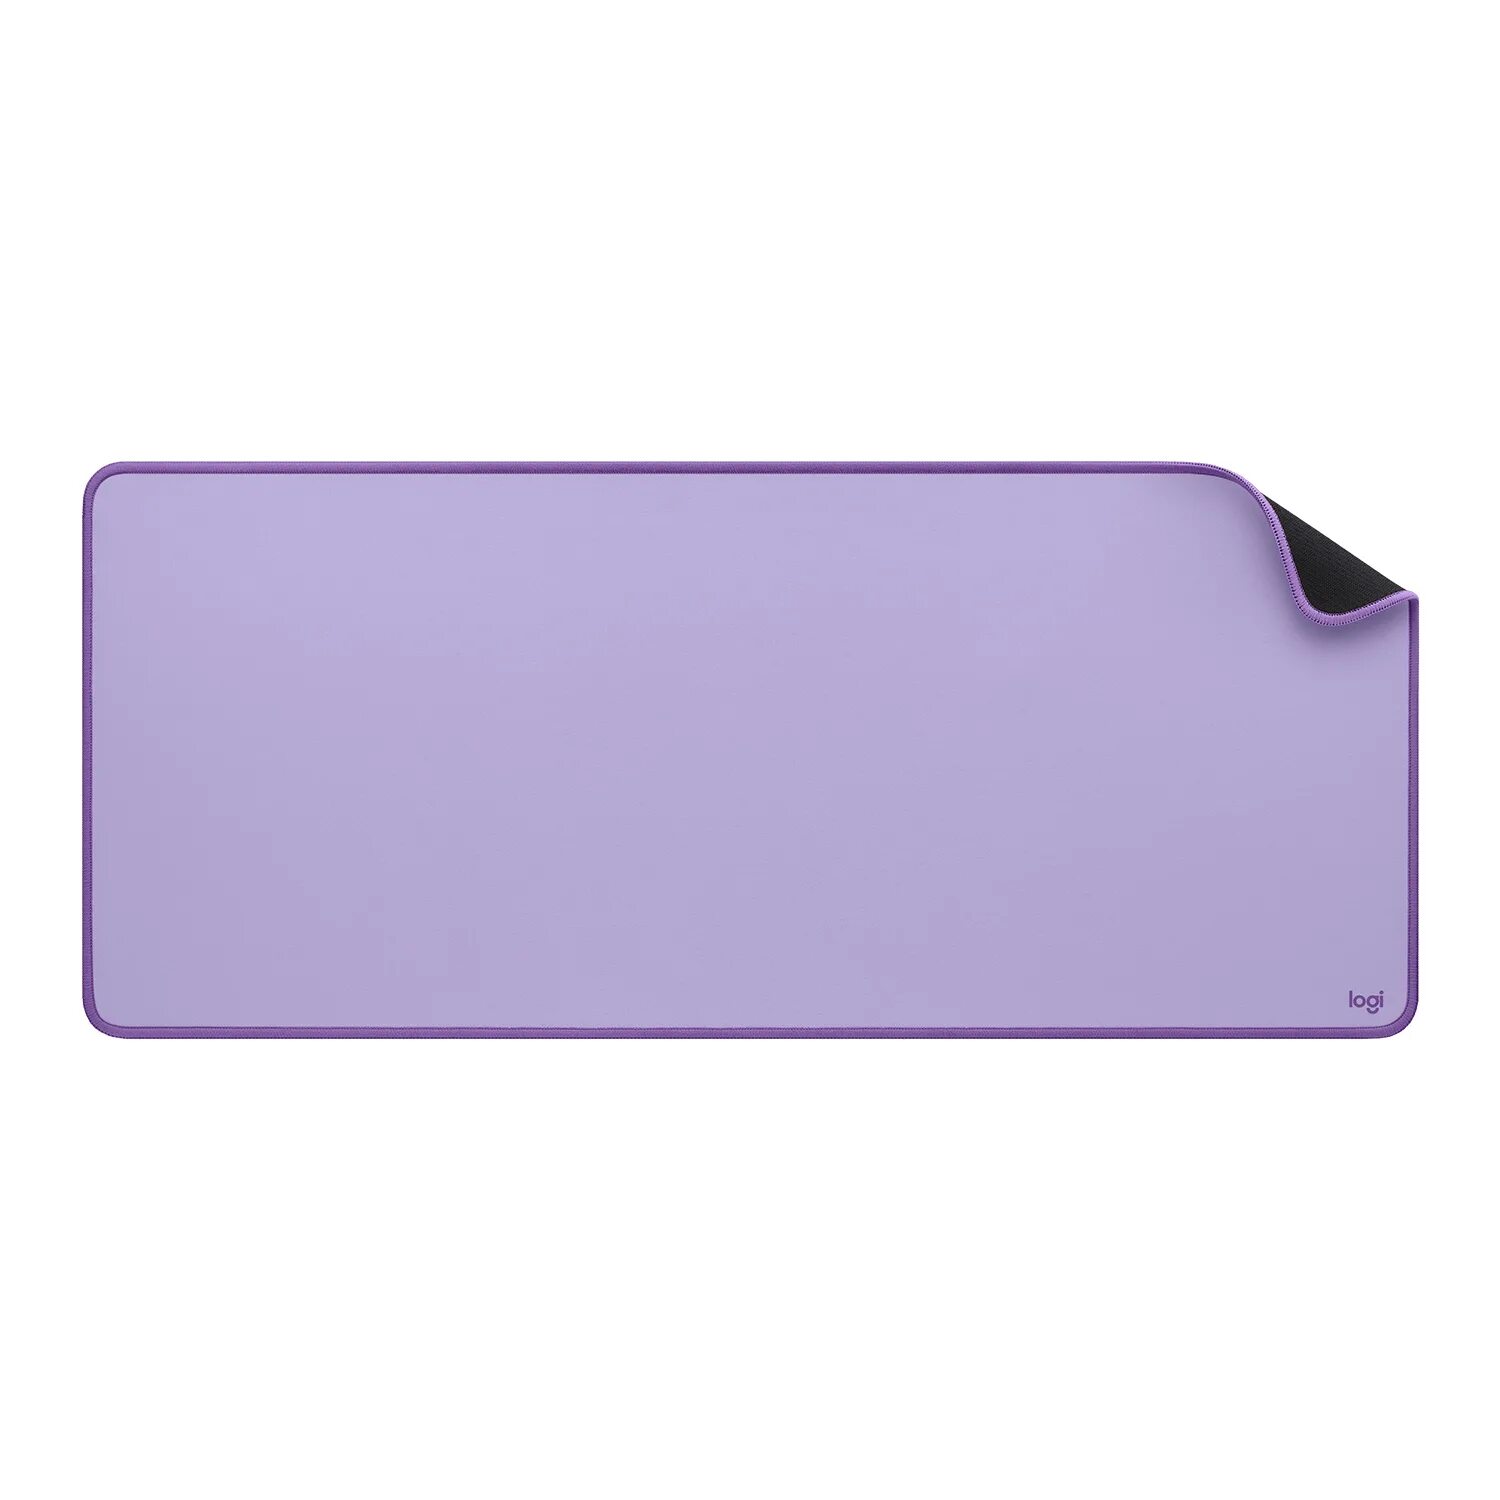 Logitech Desk mat Studio XL. Коврик для мыши Logitech Desk mat Studio Series Lavender. Logitech Studio Desk mat. Mousepad: Logitech Studio Desk mat.